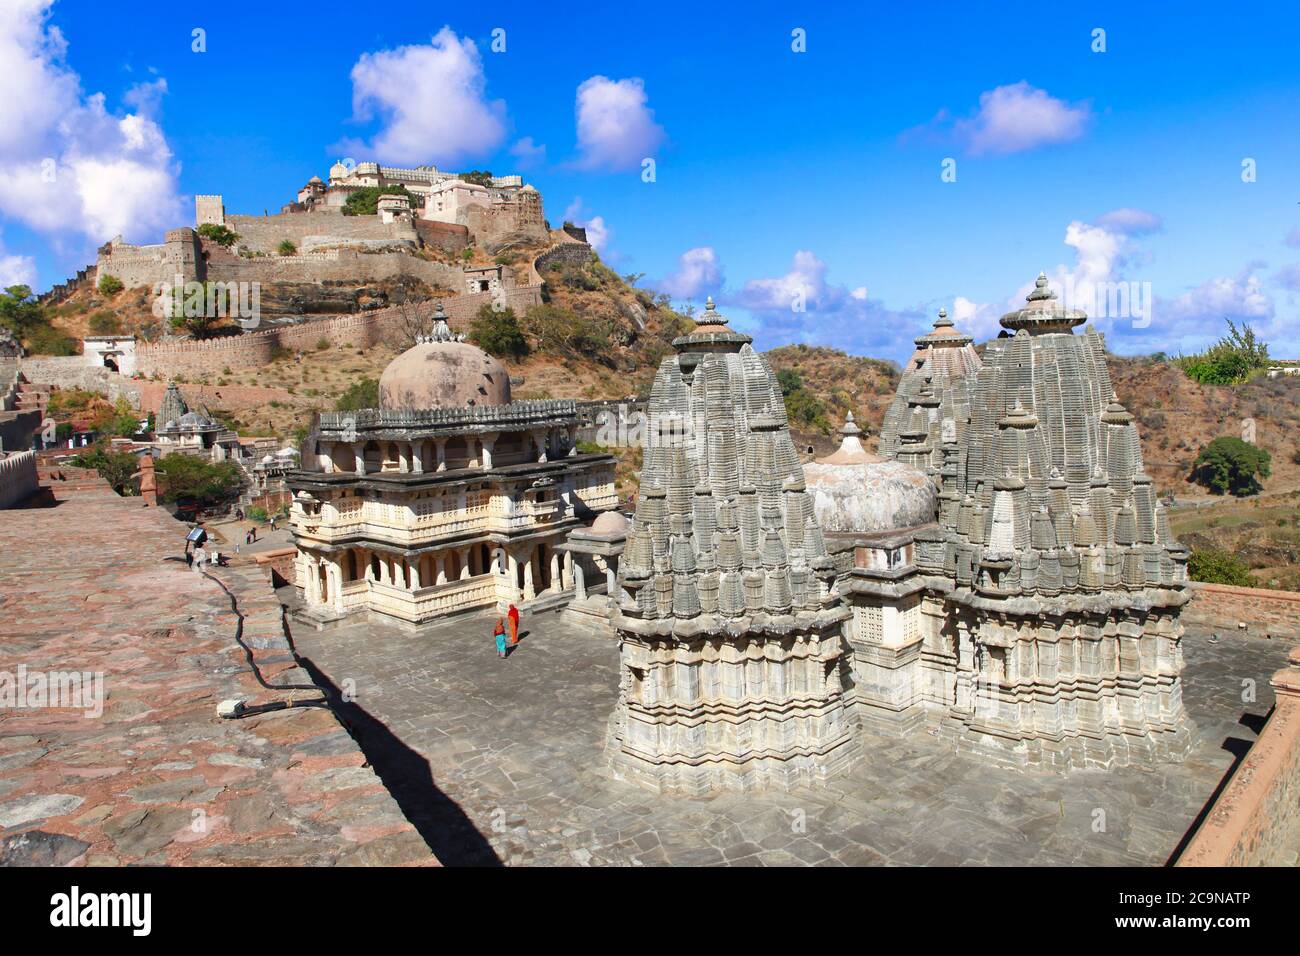 Castello e mura fortificate di Kumbhalgarh Fort nello stato del Rajasthan. India Foto Stock